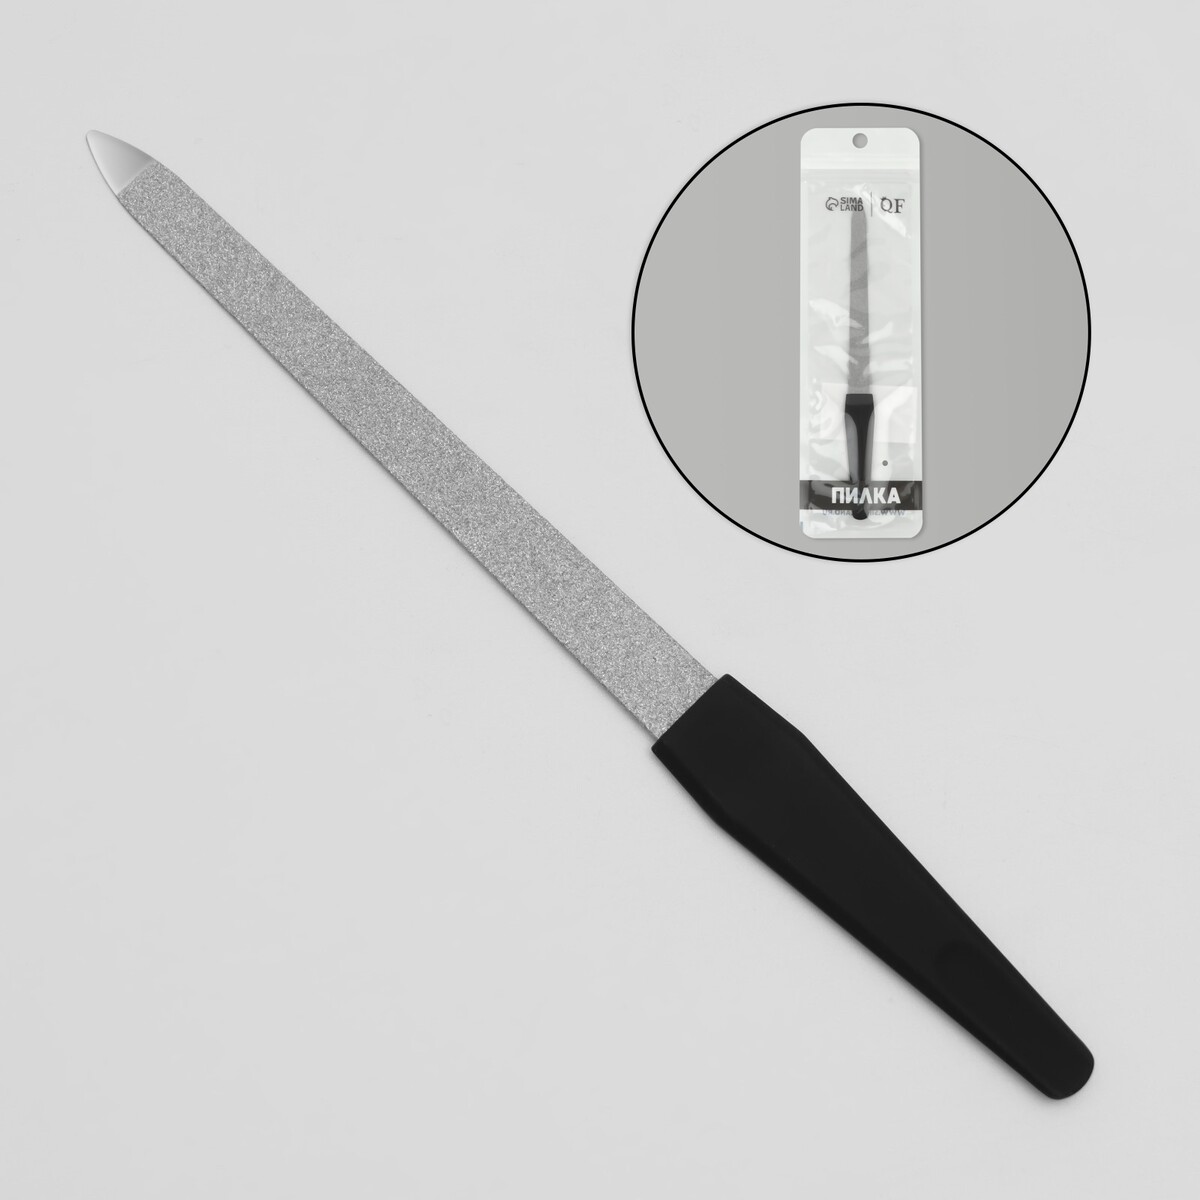 Пилка металлическая для ногтей, прорезиненная ручка, 17 см, цвет серебристый/черный пилка триммер металлическая для ногтей 17 см с защитным колпачком в чехле